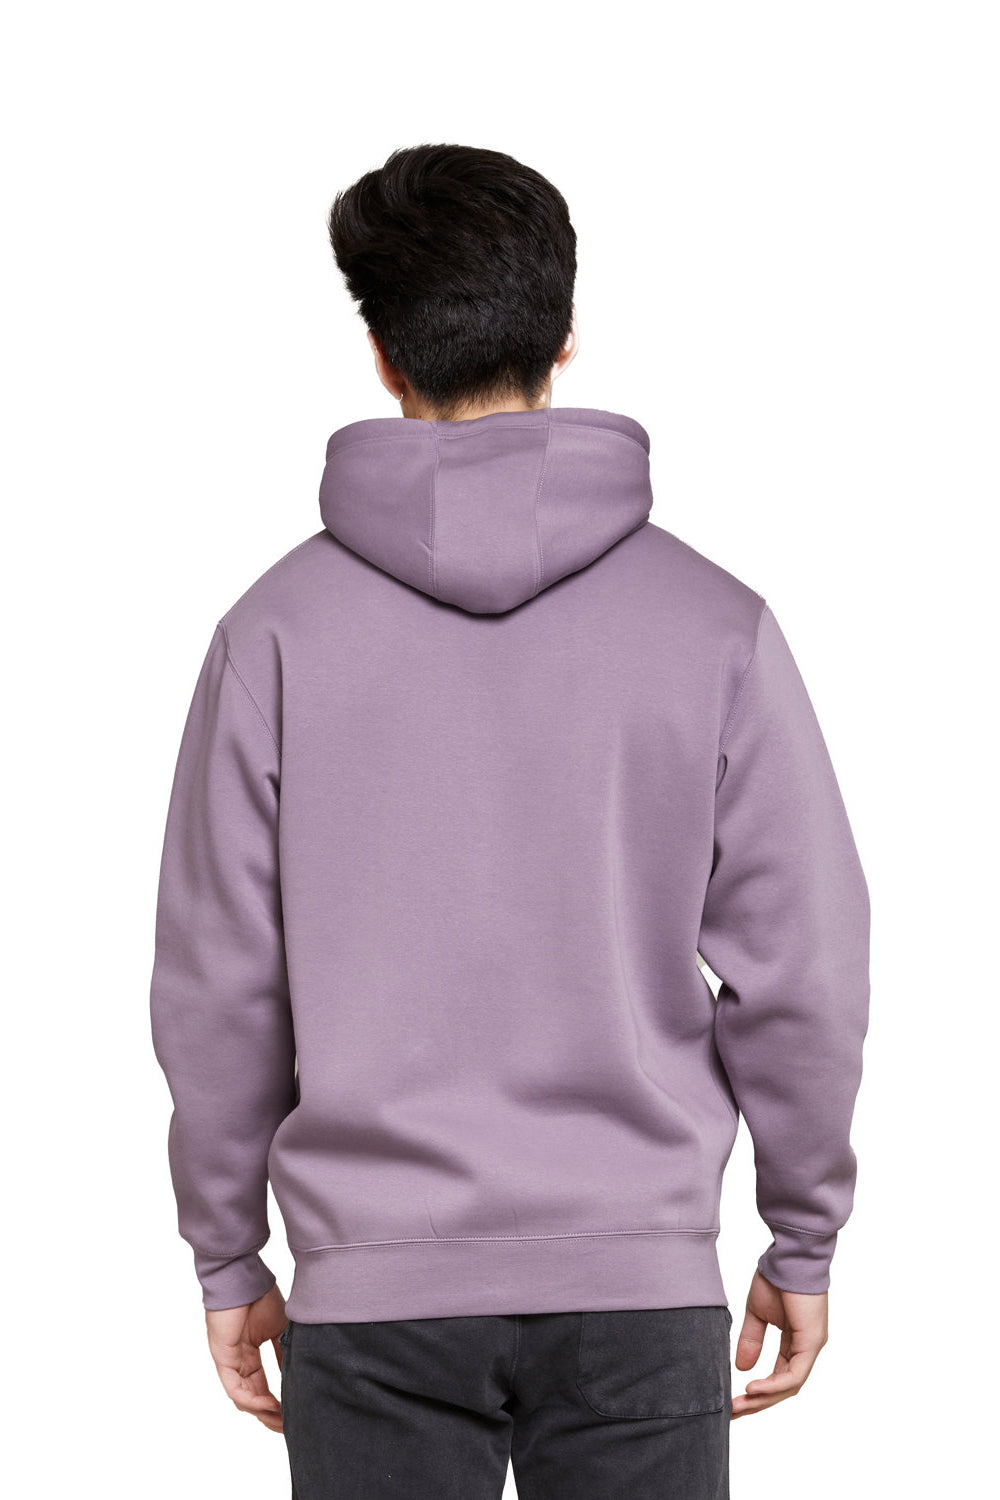 Lane Seven LS19001 Mens Hooded Sweatshirt Hoodie Lavender Purple Back